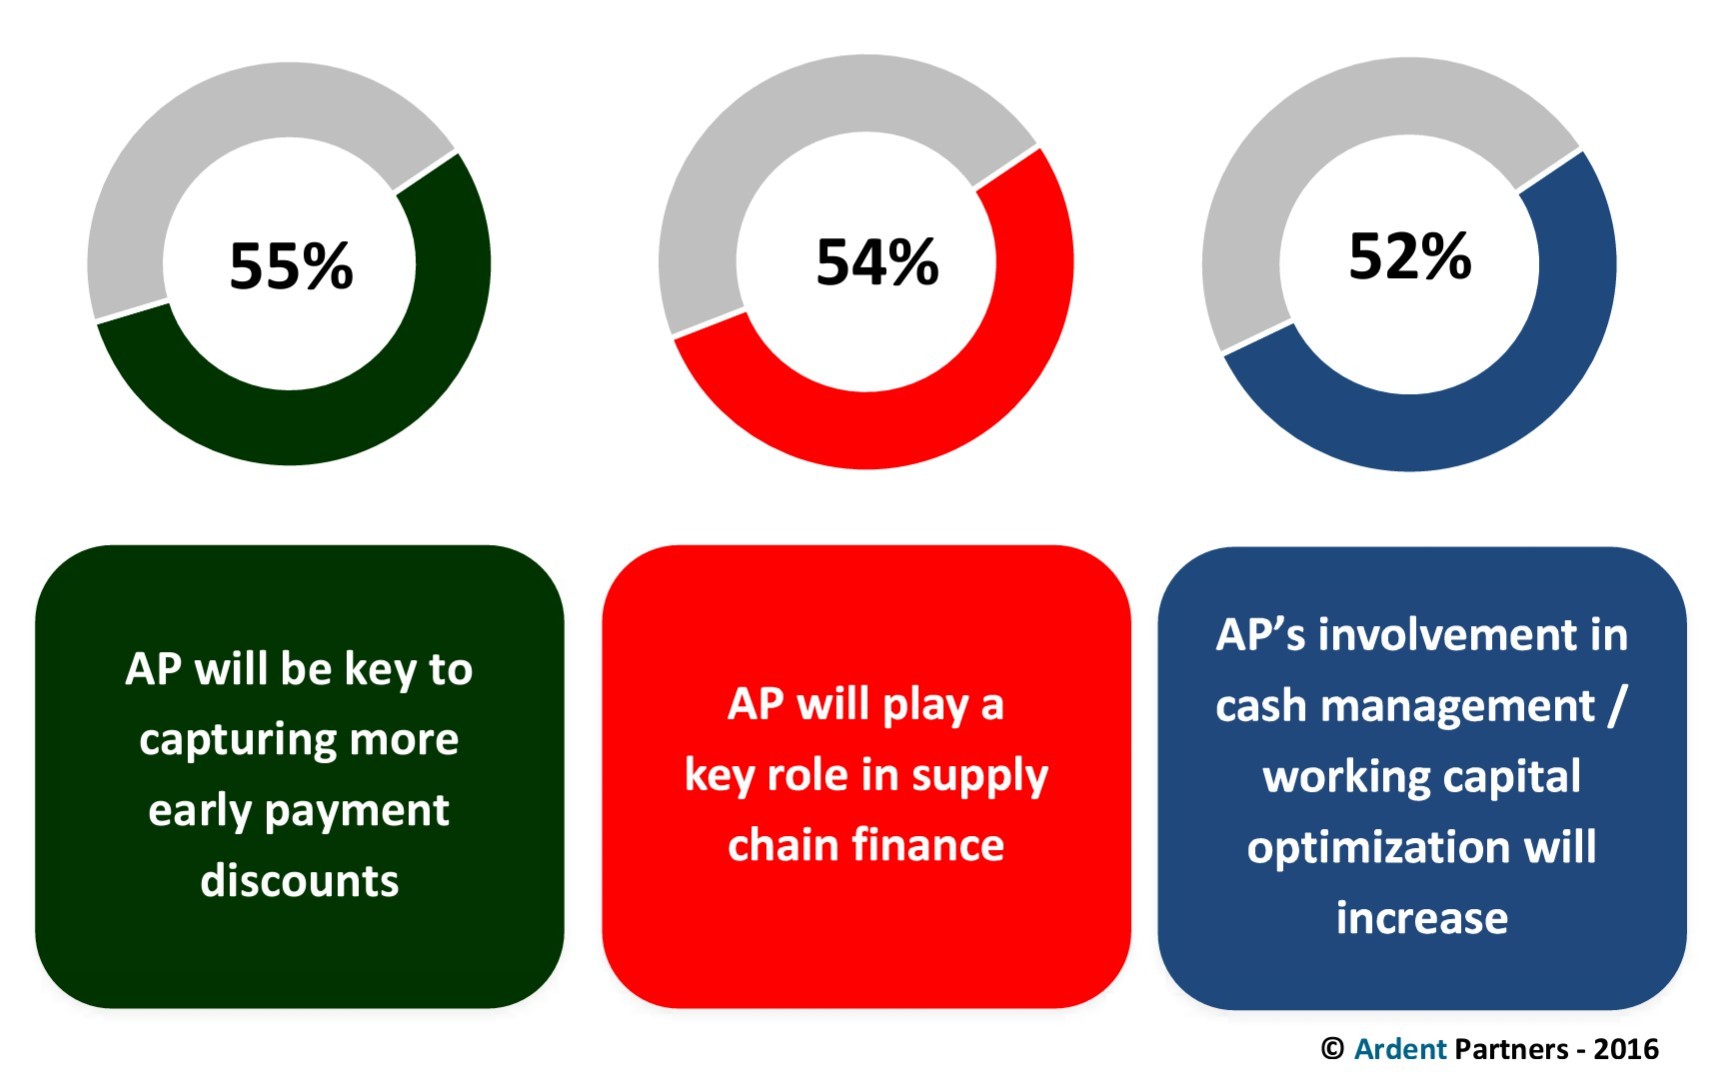 Expected Changes Regarding AP's Cash Management Impact